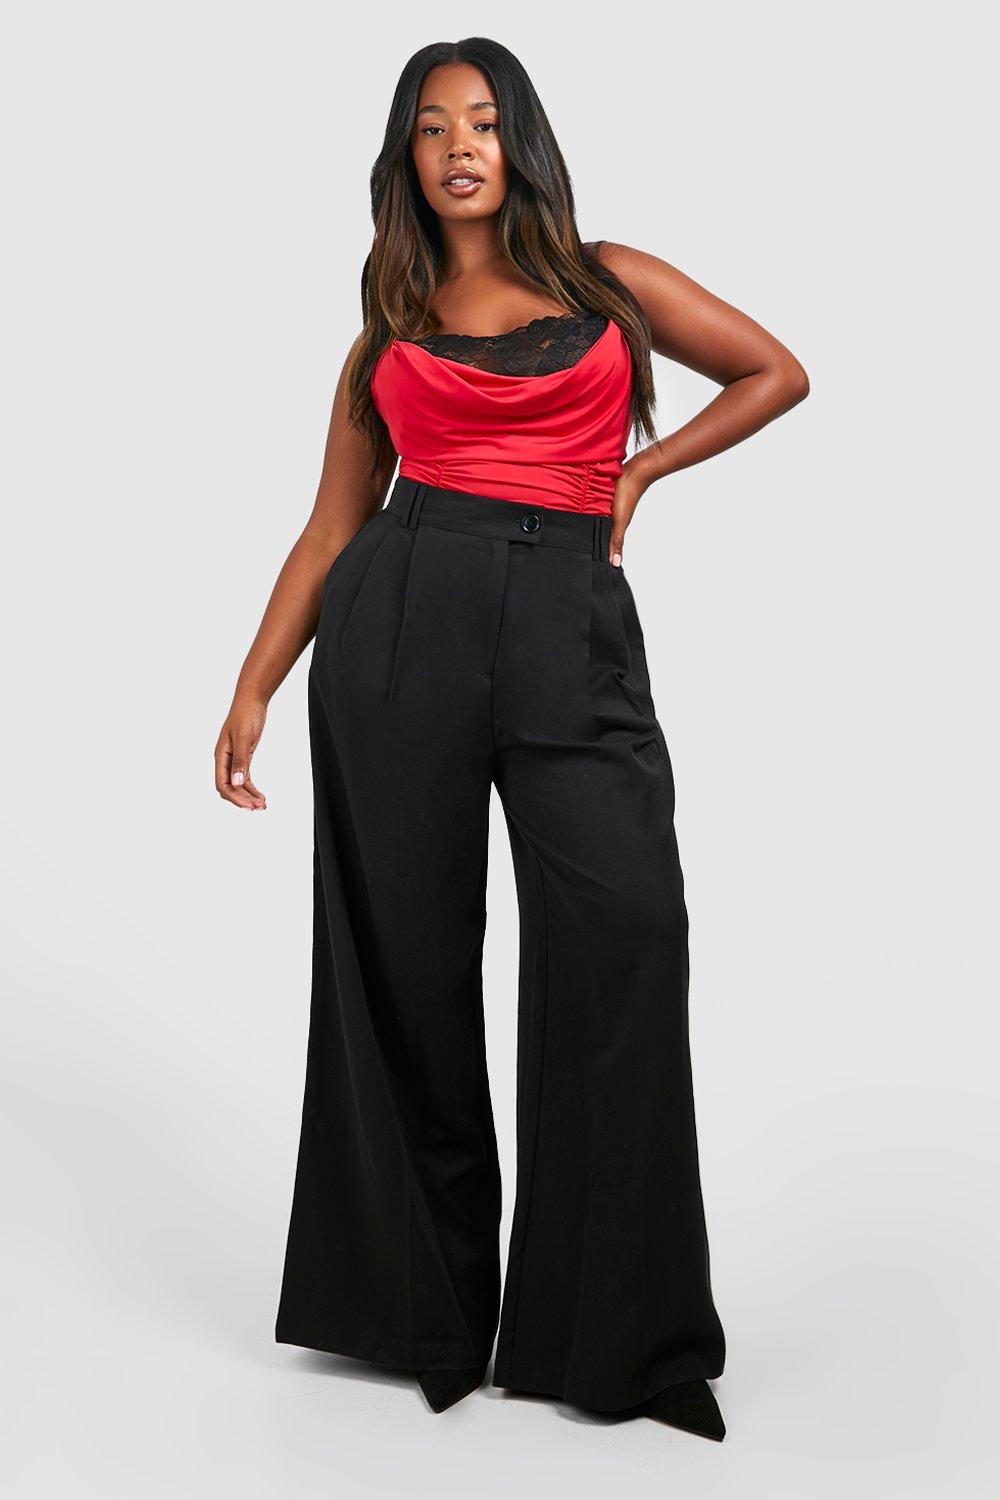 Women's Black Plus Lace Inset Slinky Bodysuit